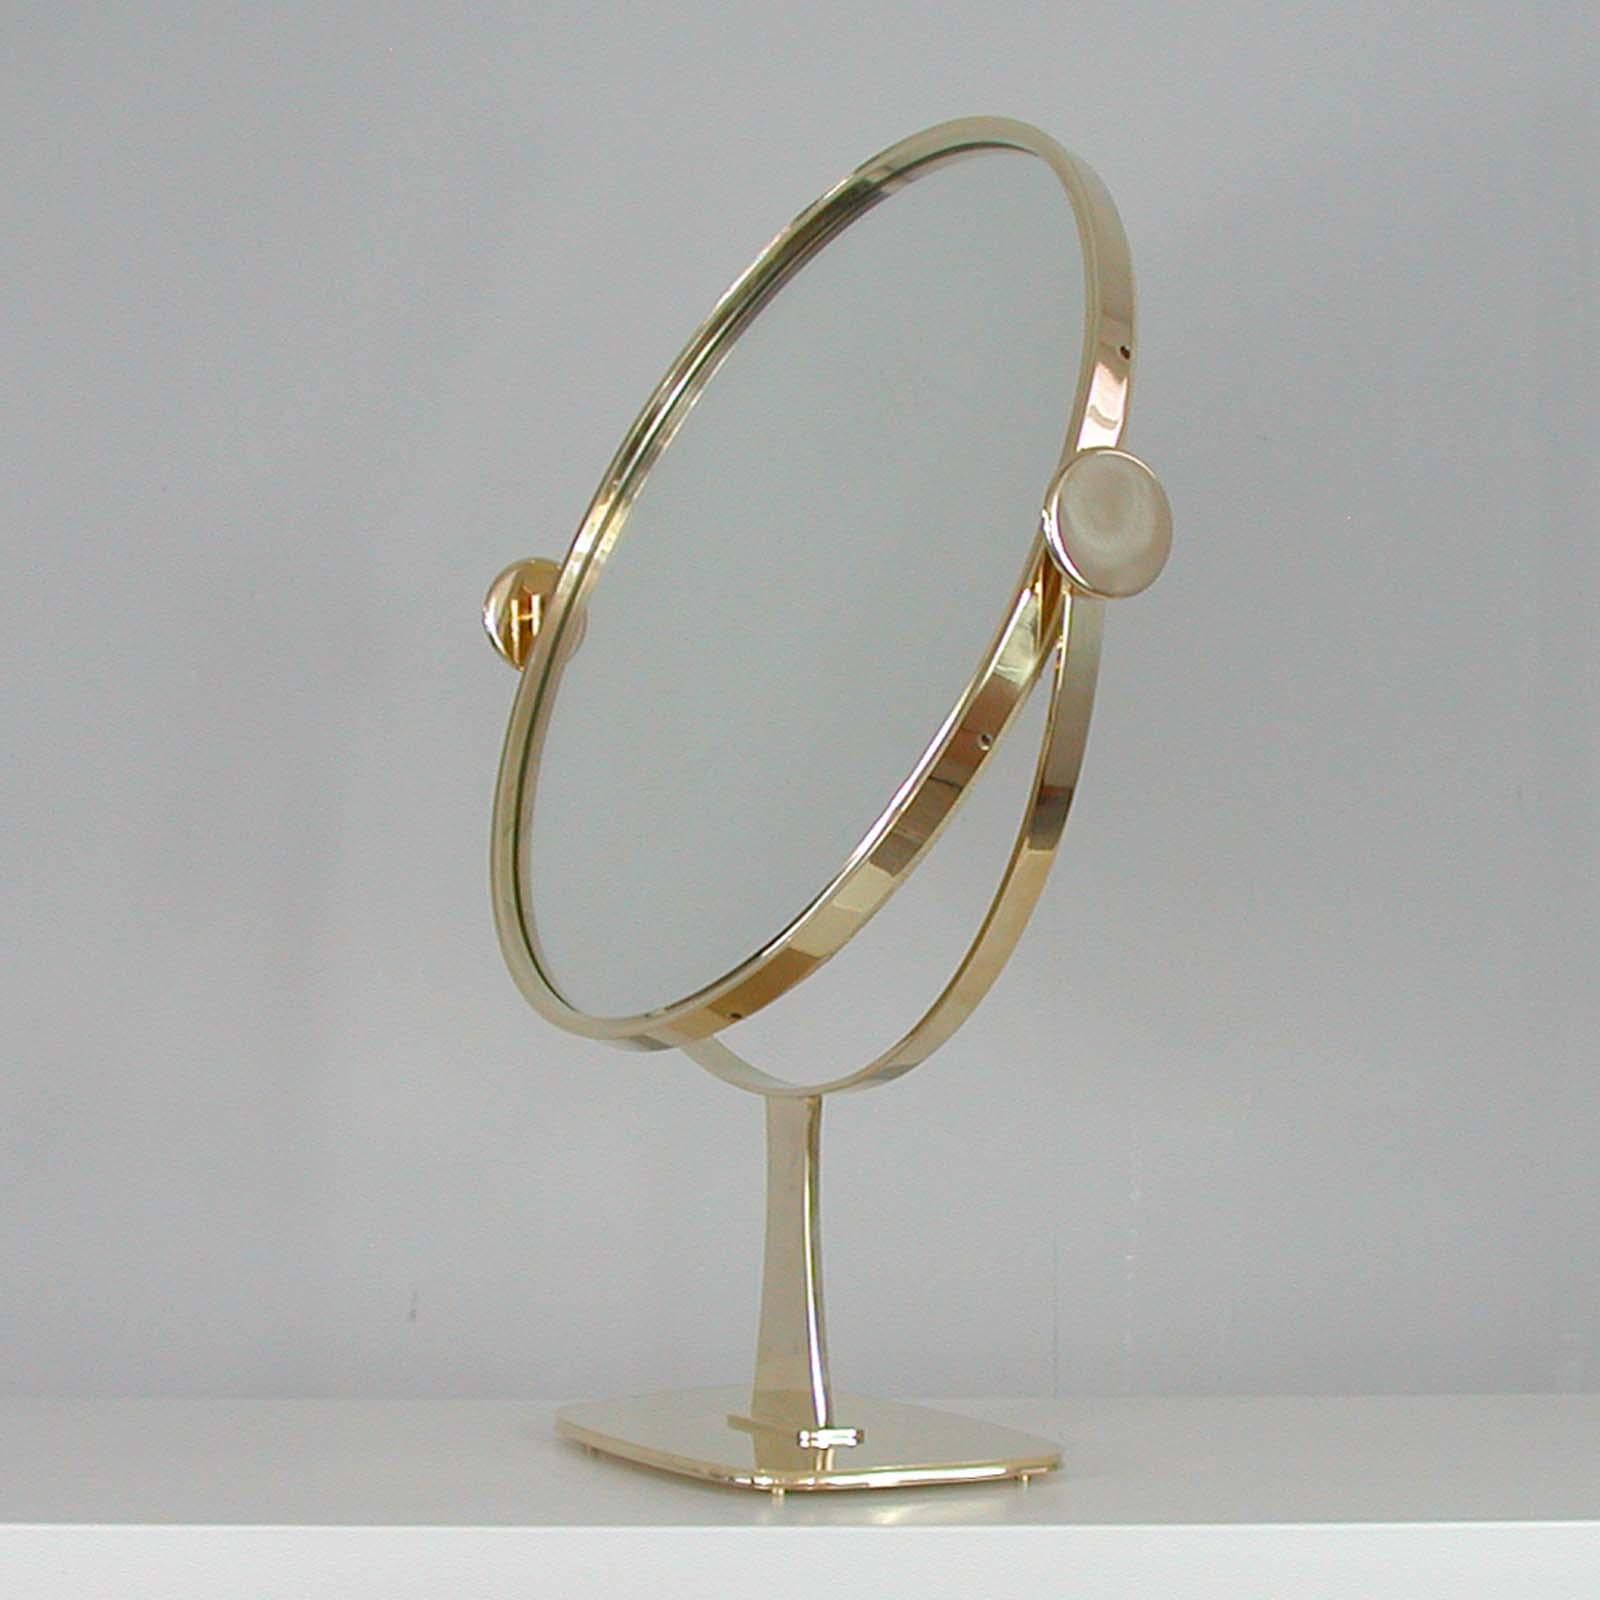 Mid-20th Century Midcentury German Brass Table Mirror by Vereinigte Werkstätten München, 1960s For Sale